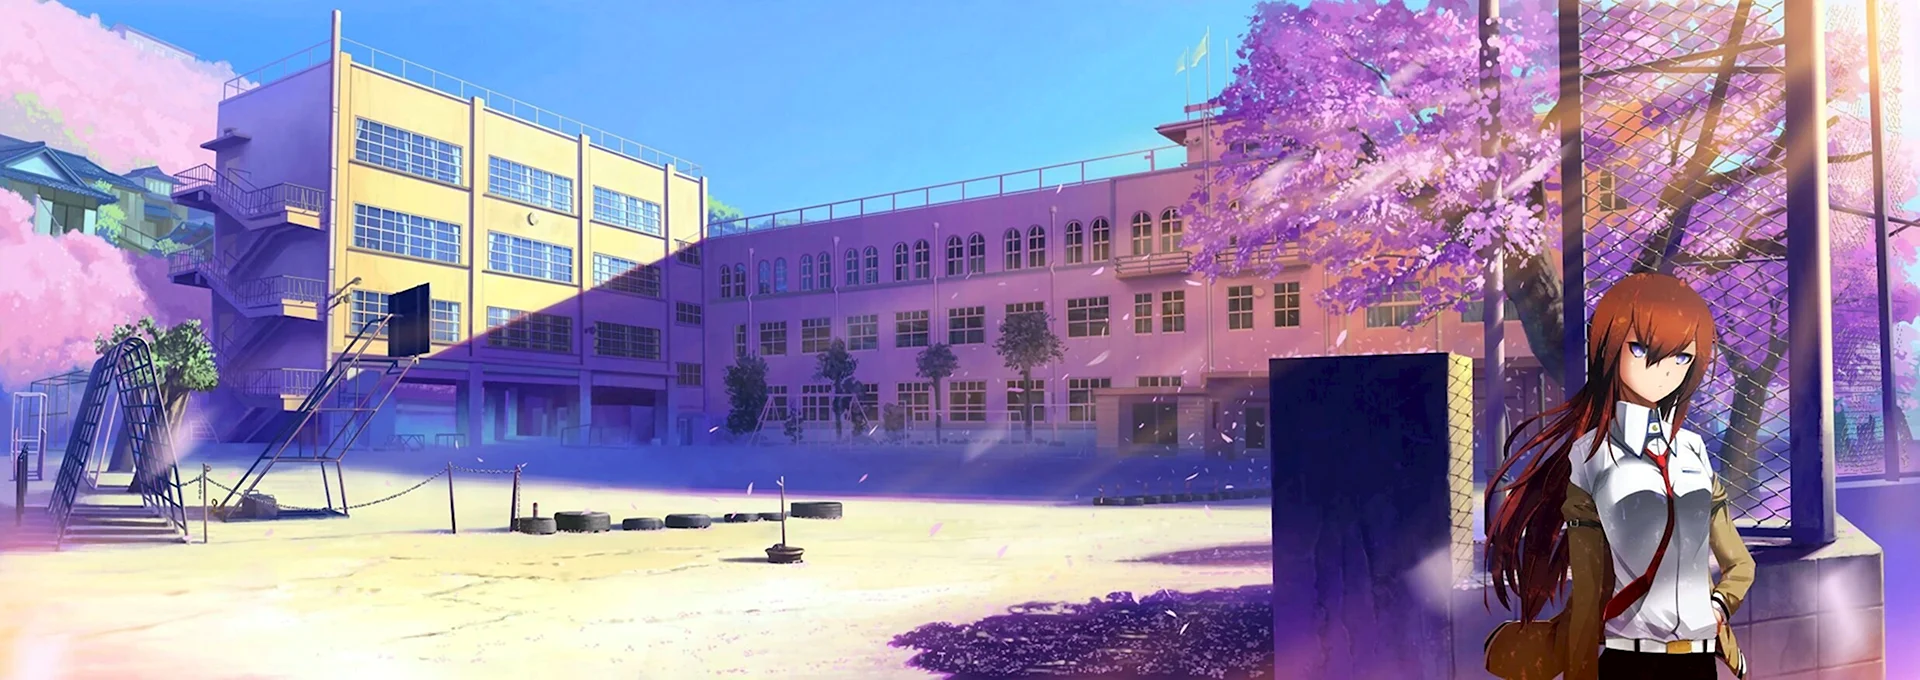 Токио школы аниме